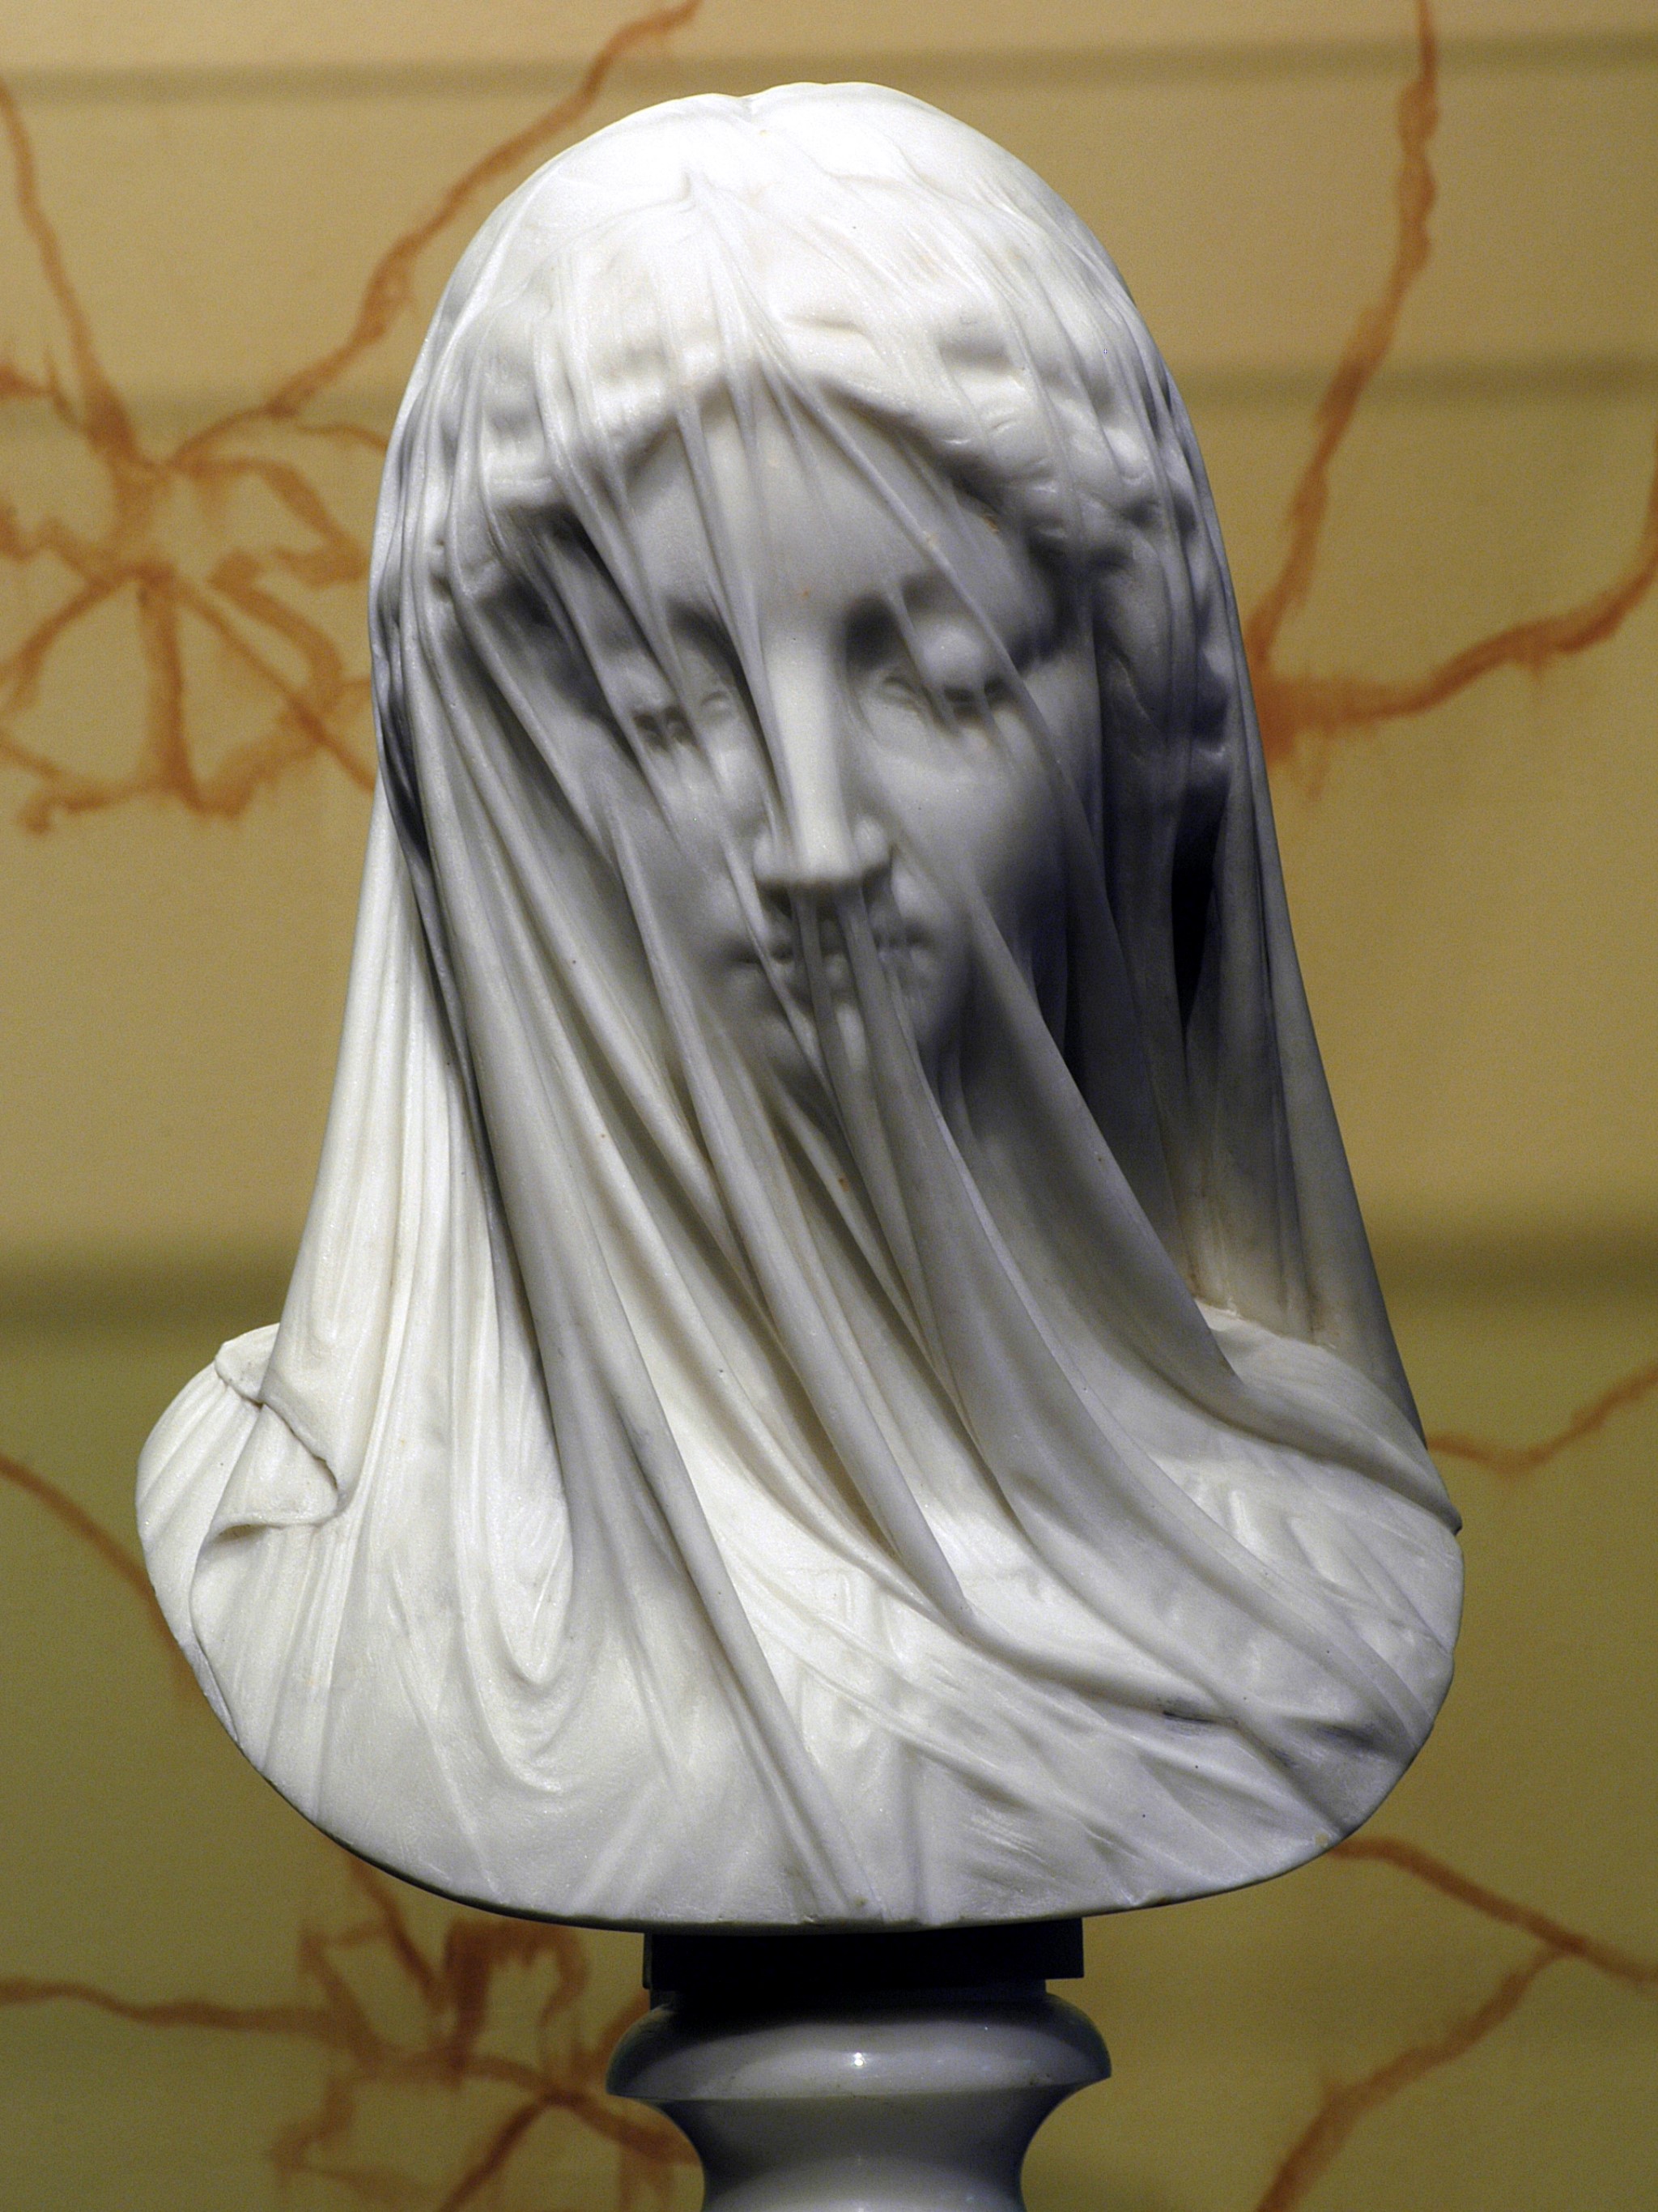 The Veiled Virgin